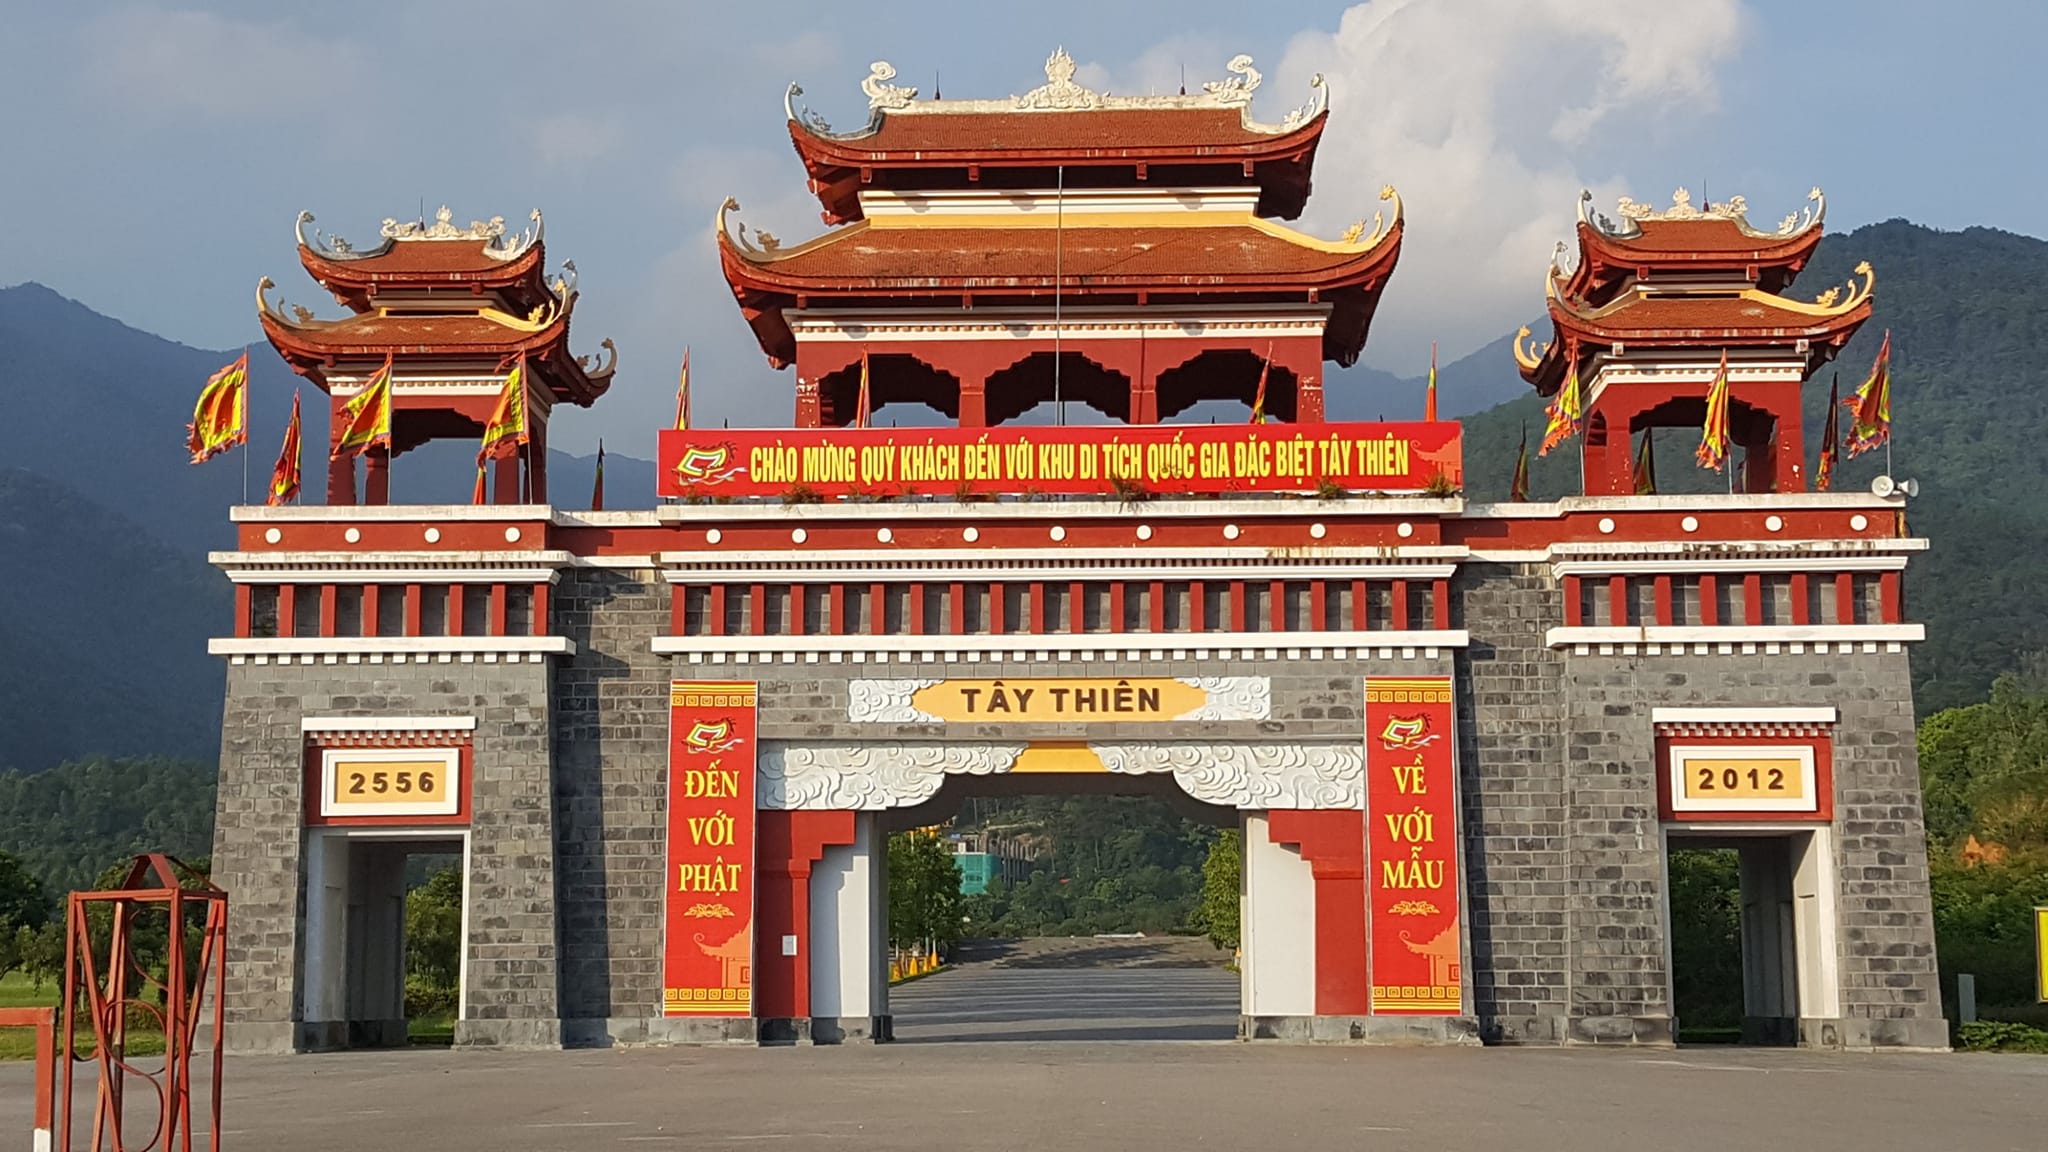 Du lịch Vĩnh Phúc: Tour chùa Tây Thiên - chùa Khai Nguyên - Vietskytourism